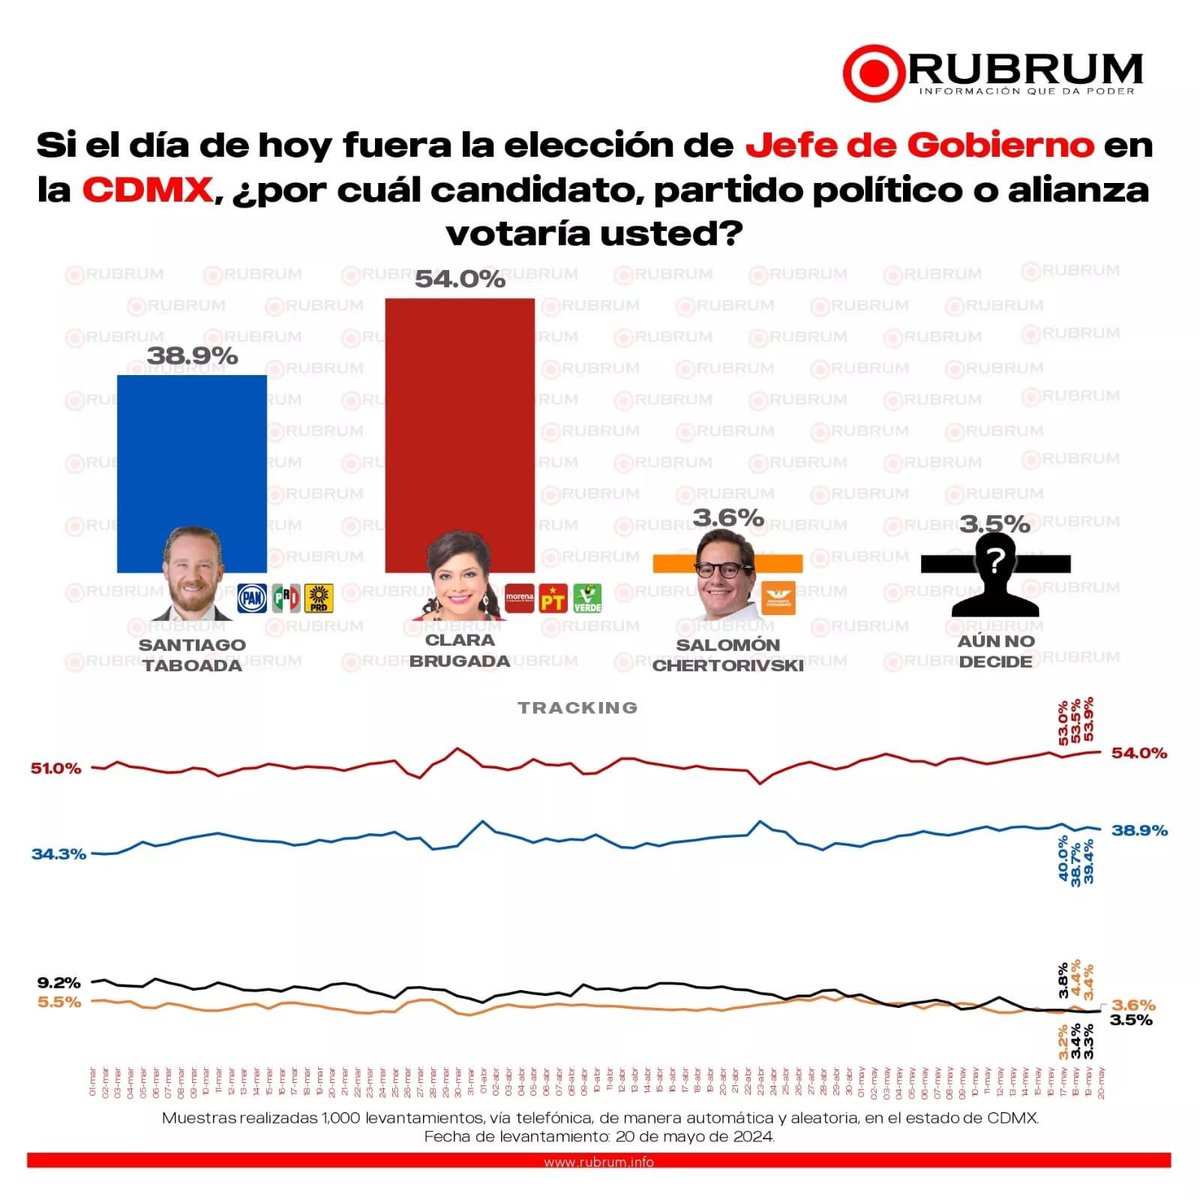 ¡Feliz jueves! La última encuesta de Rubrum nos da una ventaja de más de 15 puntos respecto de la oposición. En nuestra Ciudad de México la gente quiere que continúe la Transformación y dice NO a los gobiernos de corrupción y privilegios del PRIAN. El 2 de junio refrendará su